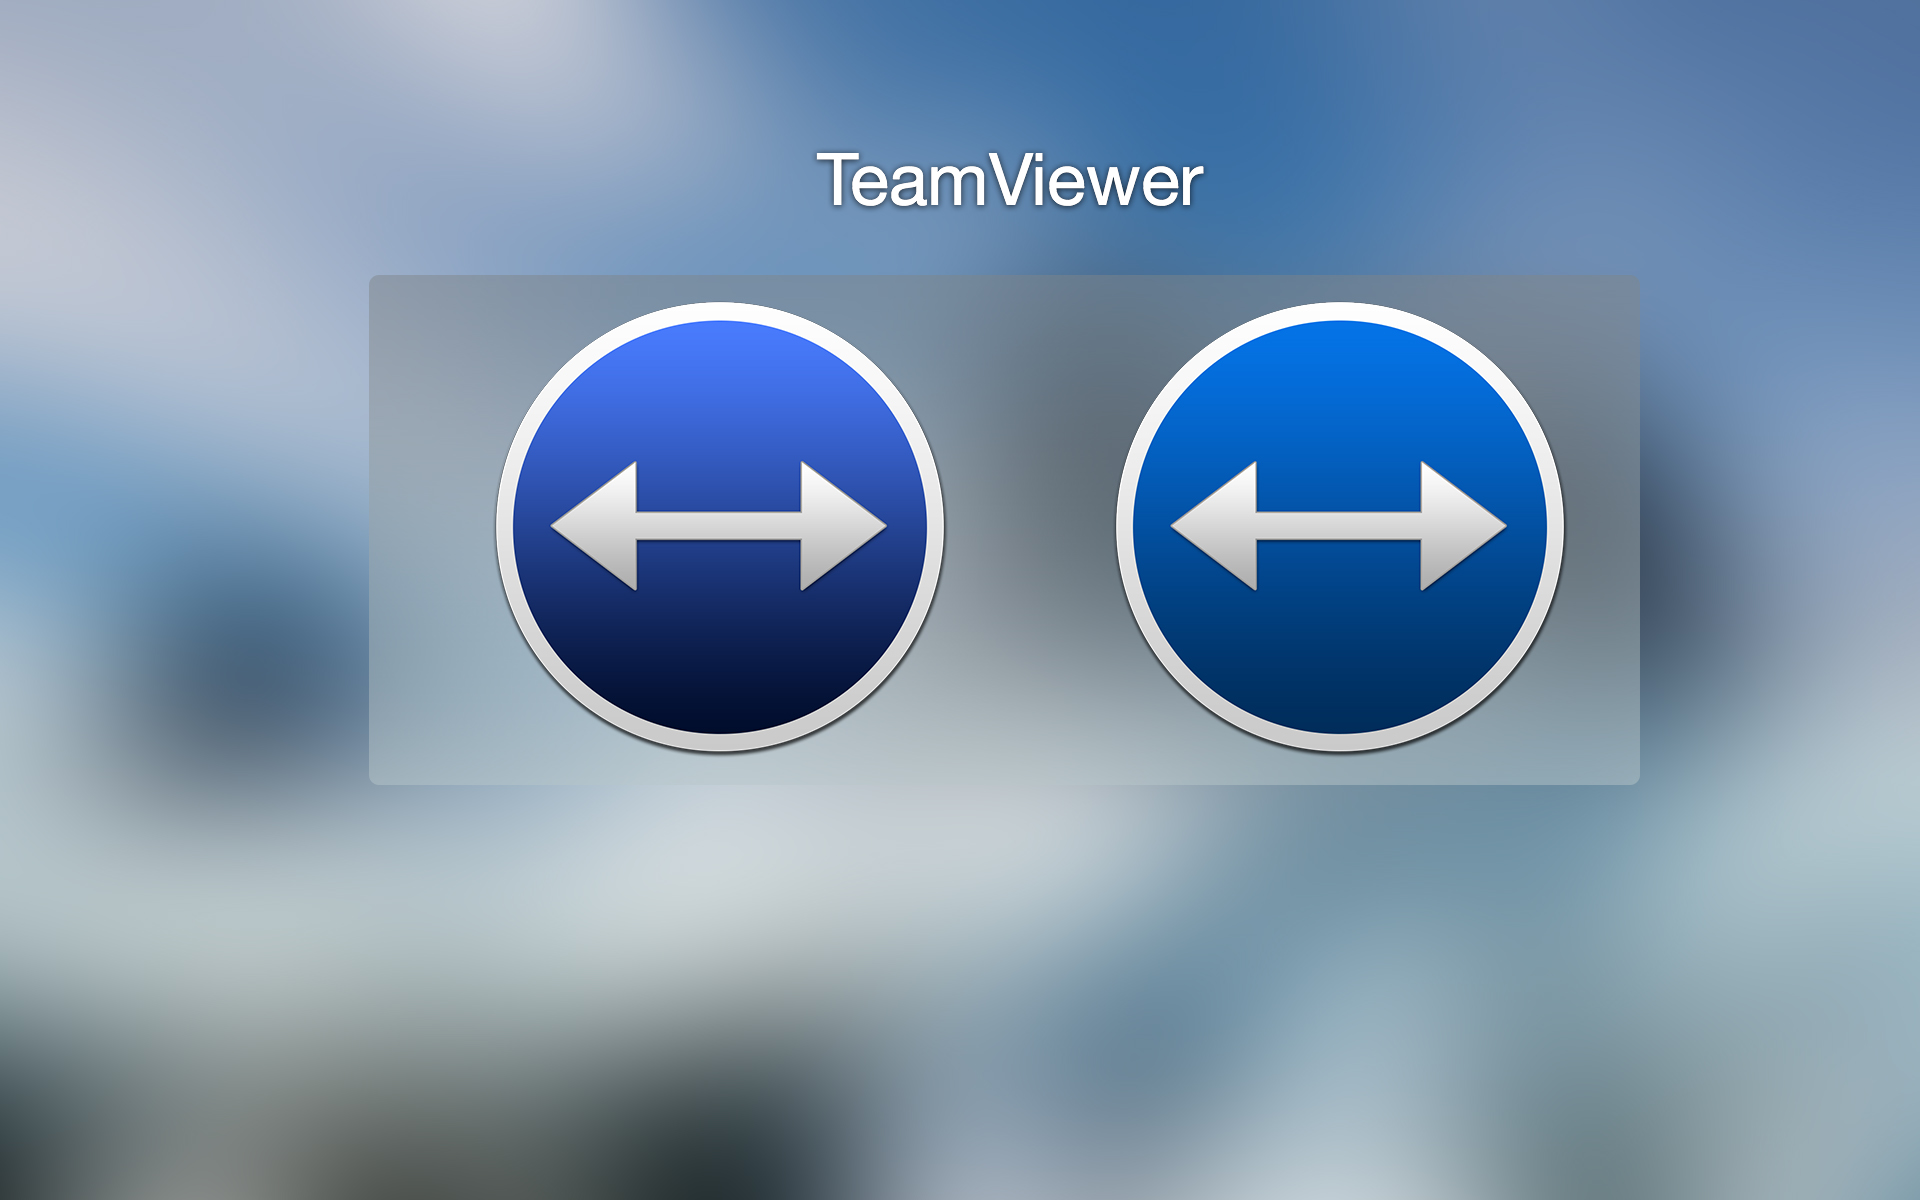 teamviewer mac 10.10.5 download